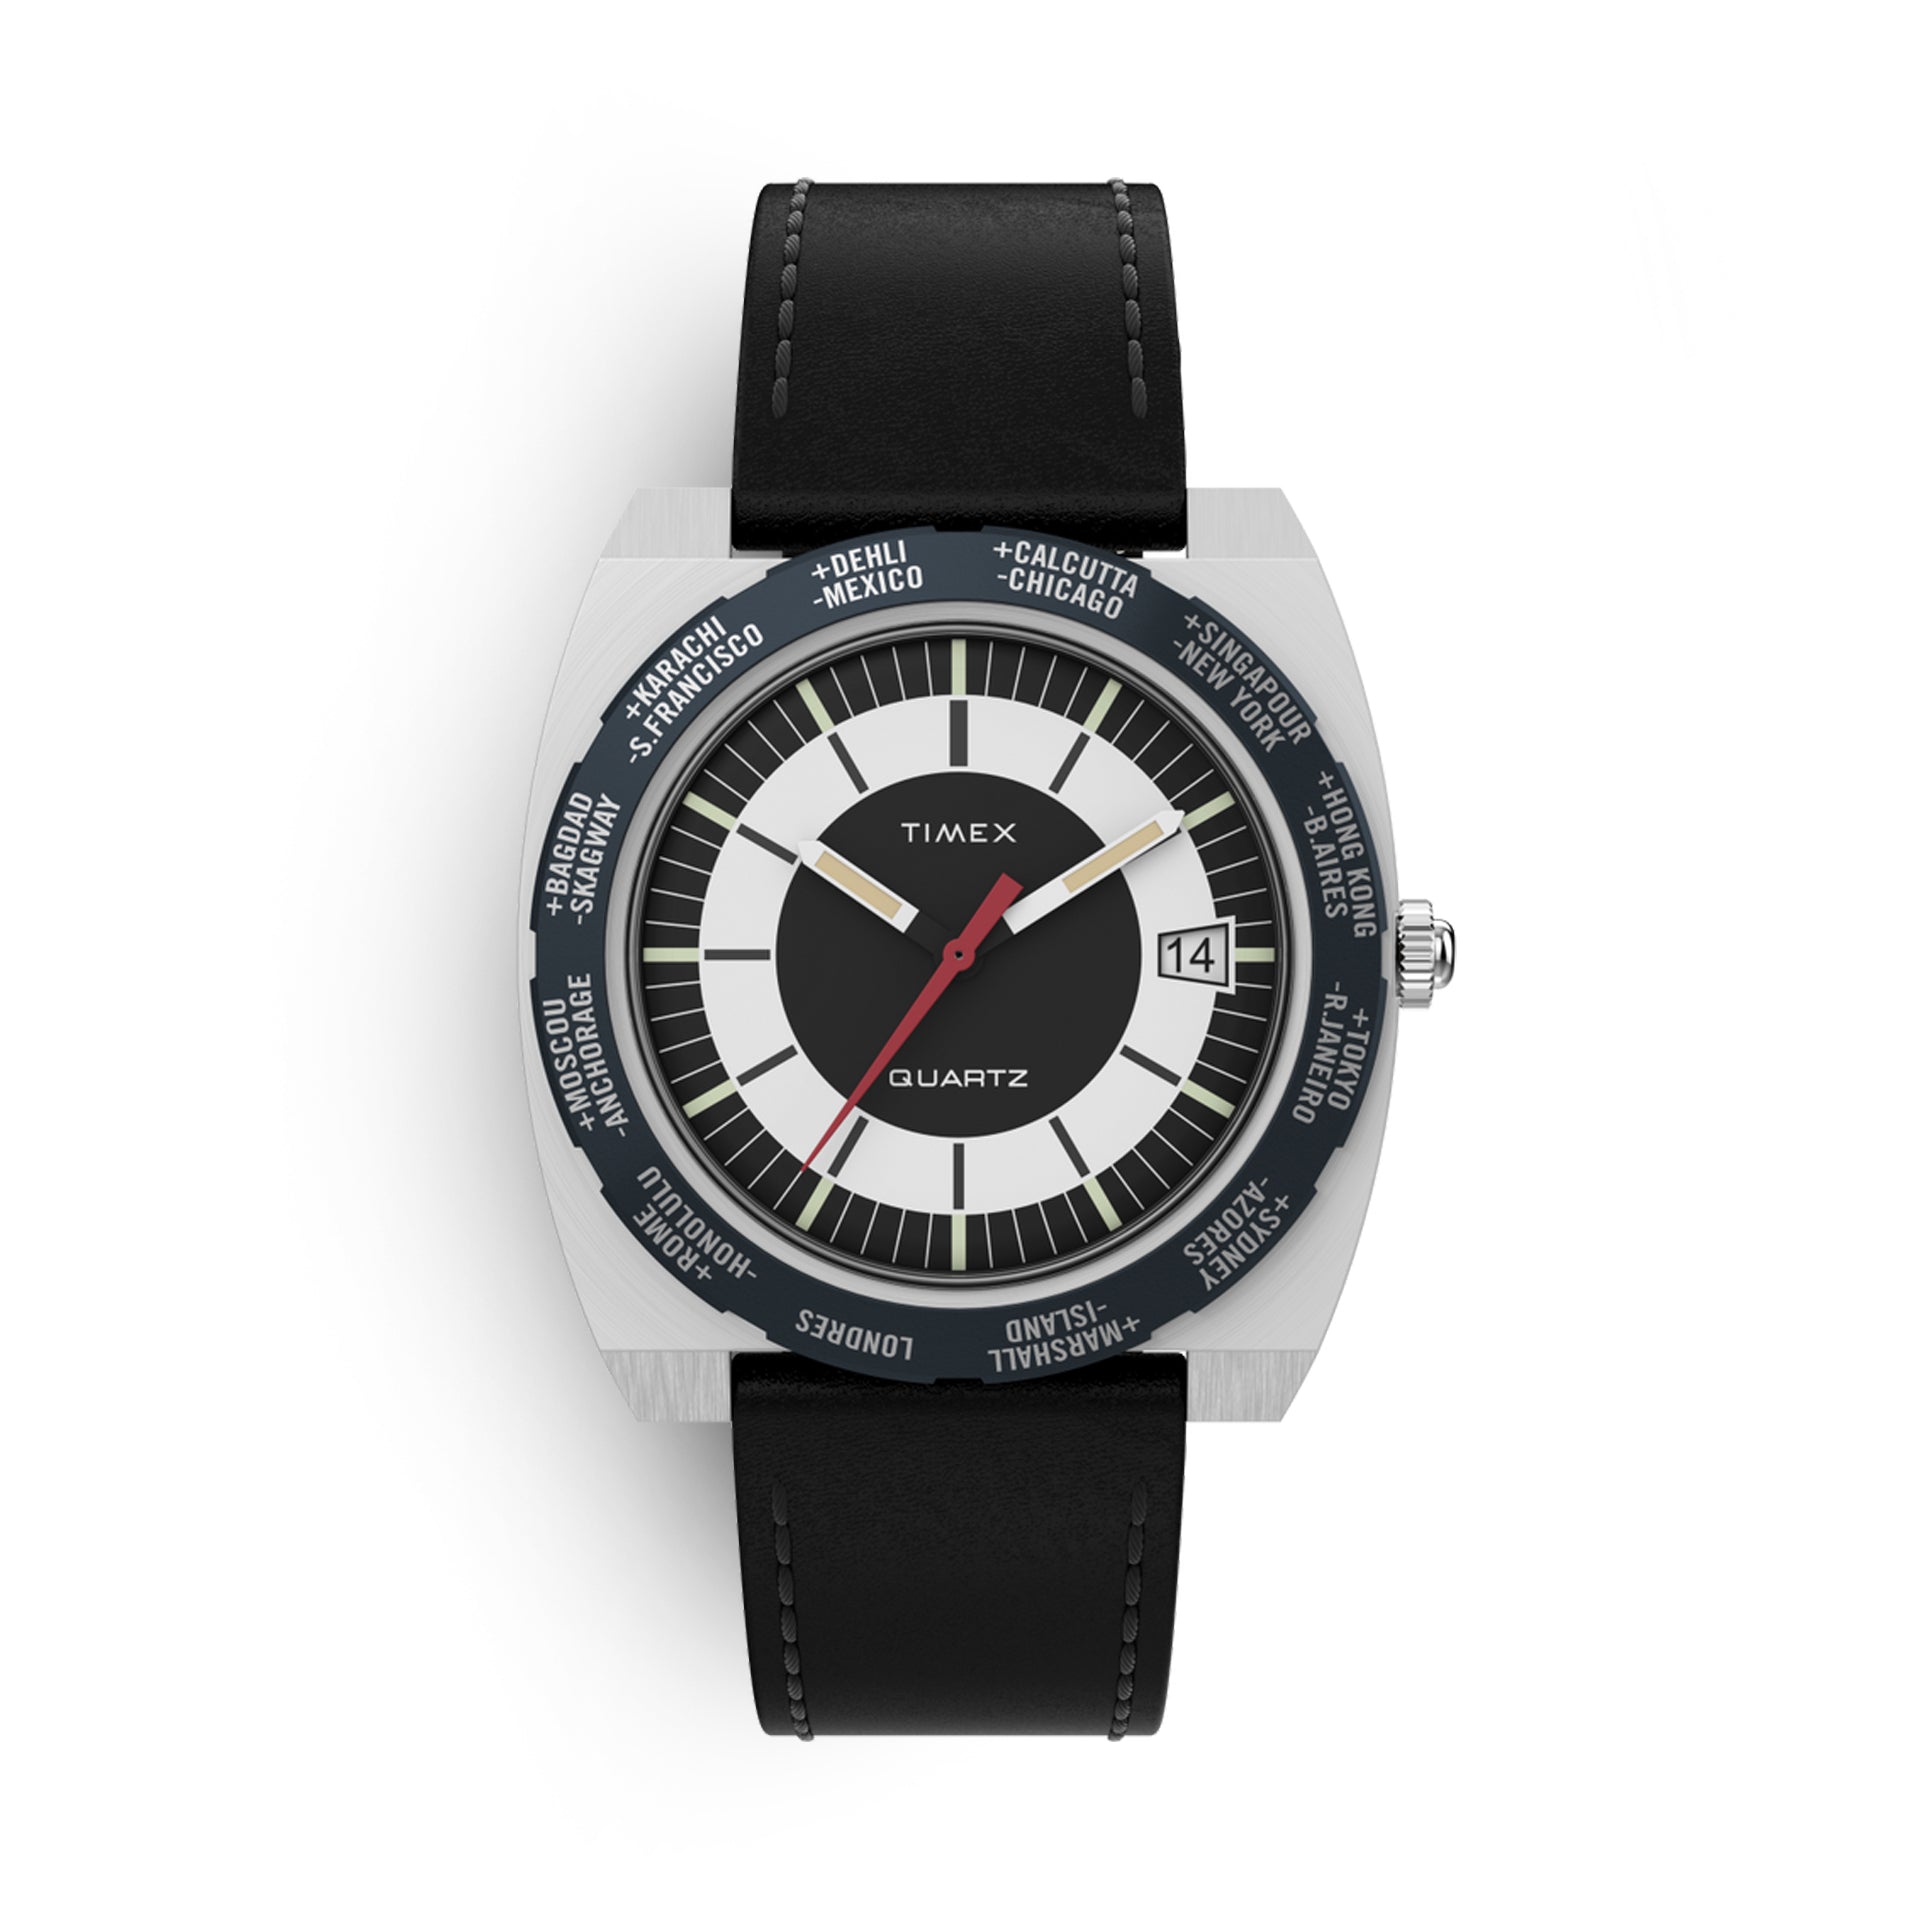 Timex World Time Reissue Watch, #Timex #World #Time #Reissue #Watch